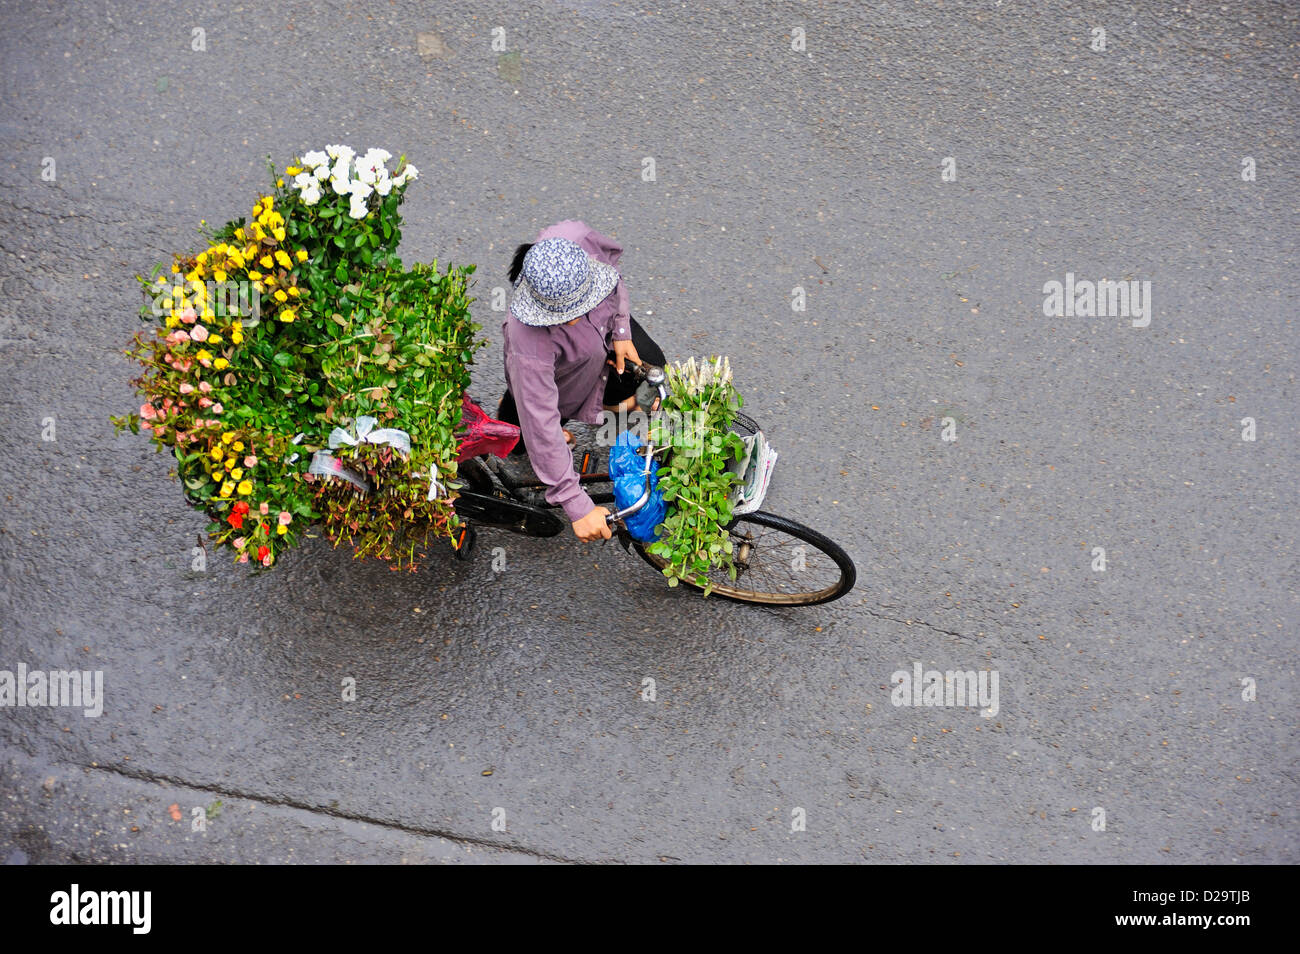 Hanoi, Vietnam - vendedor de flores Foto de stock